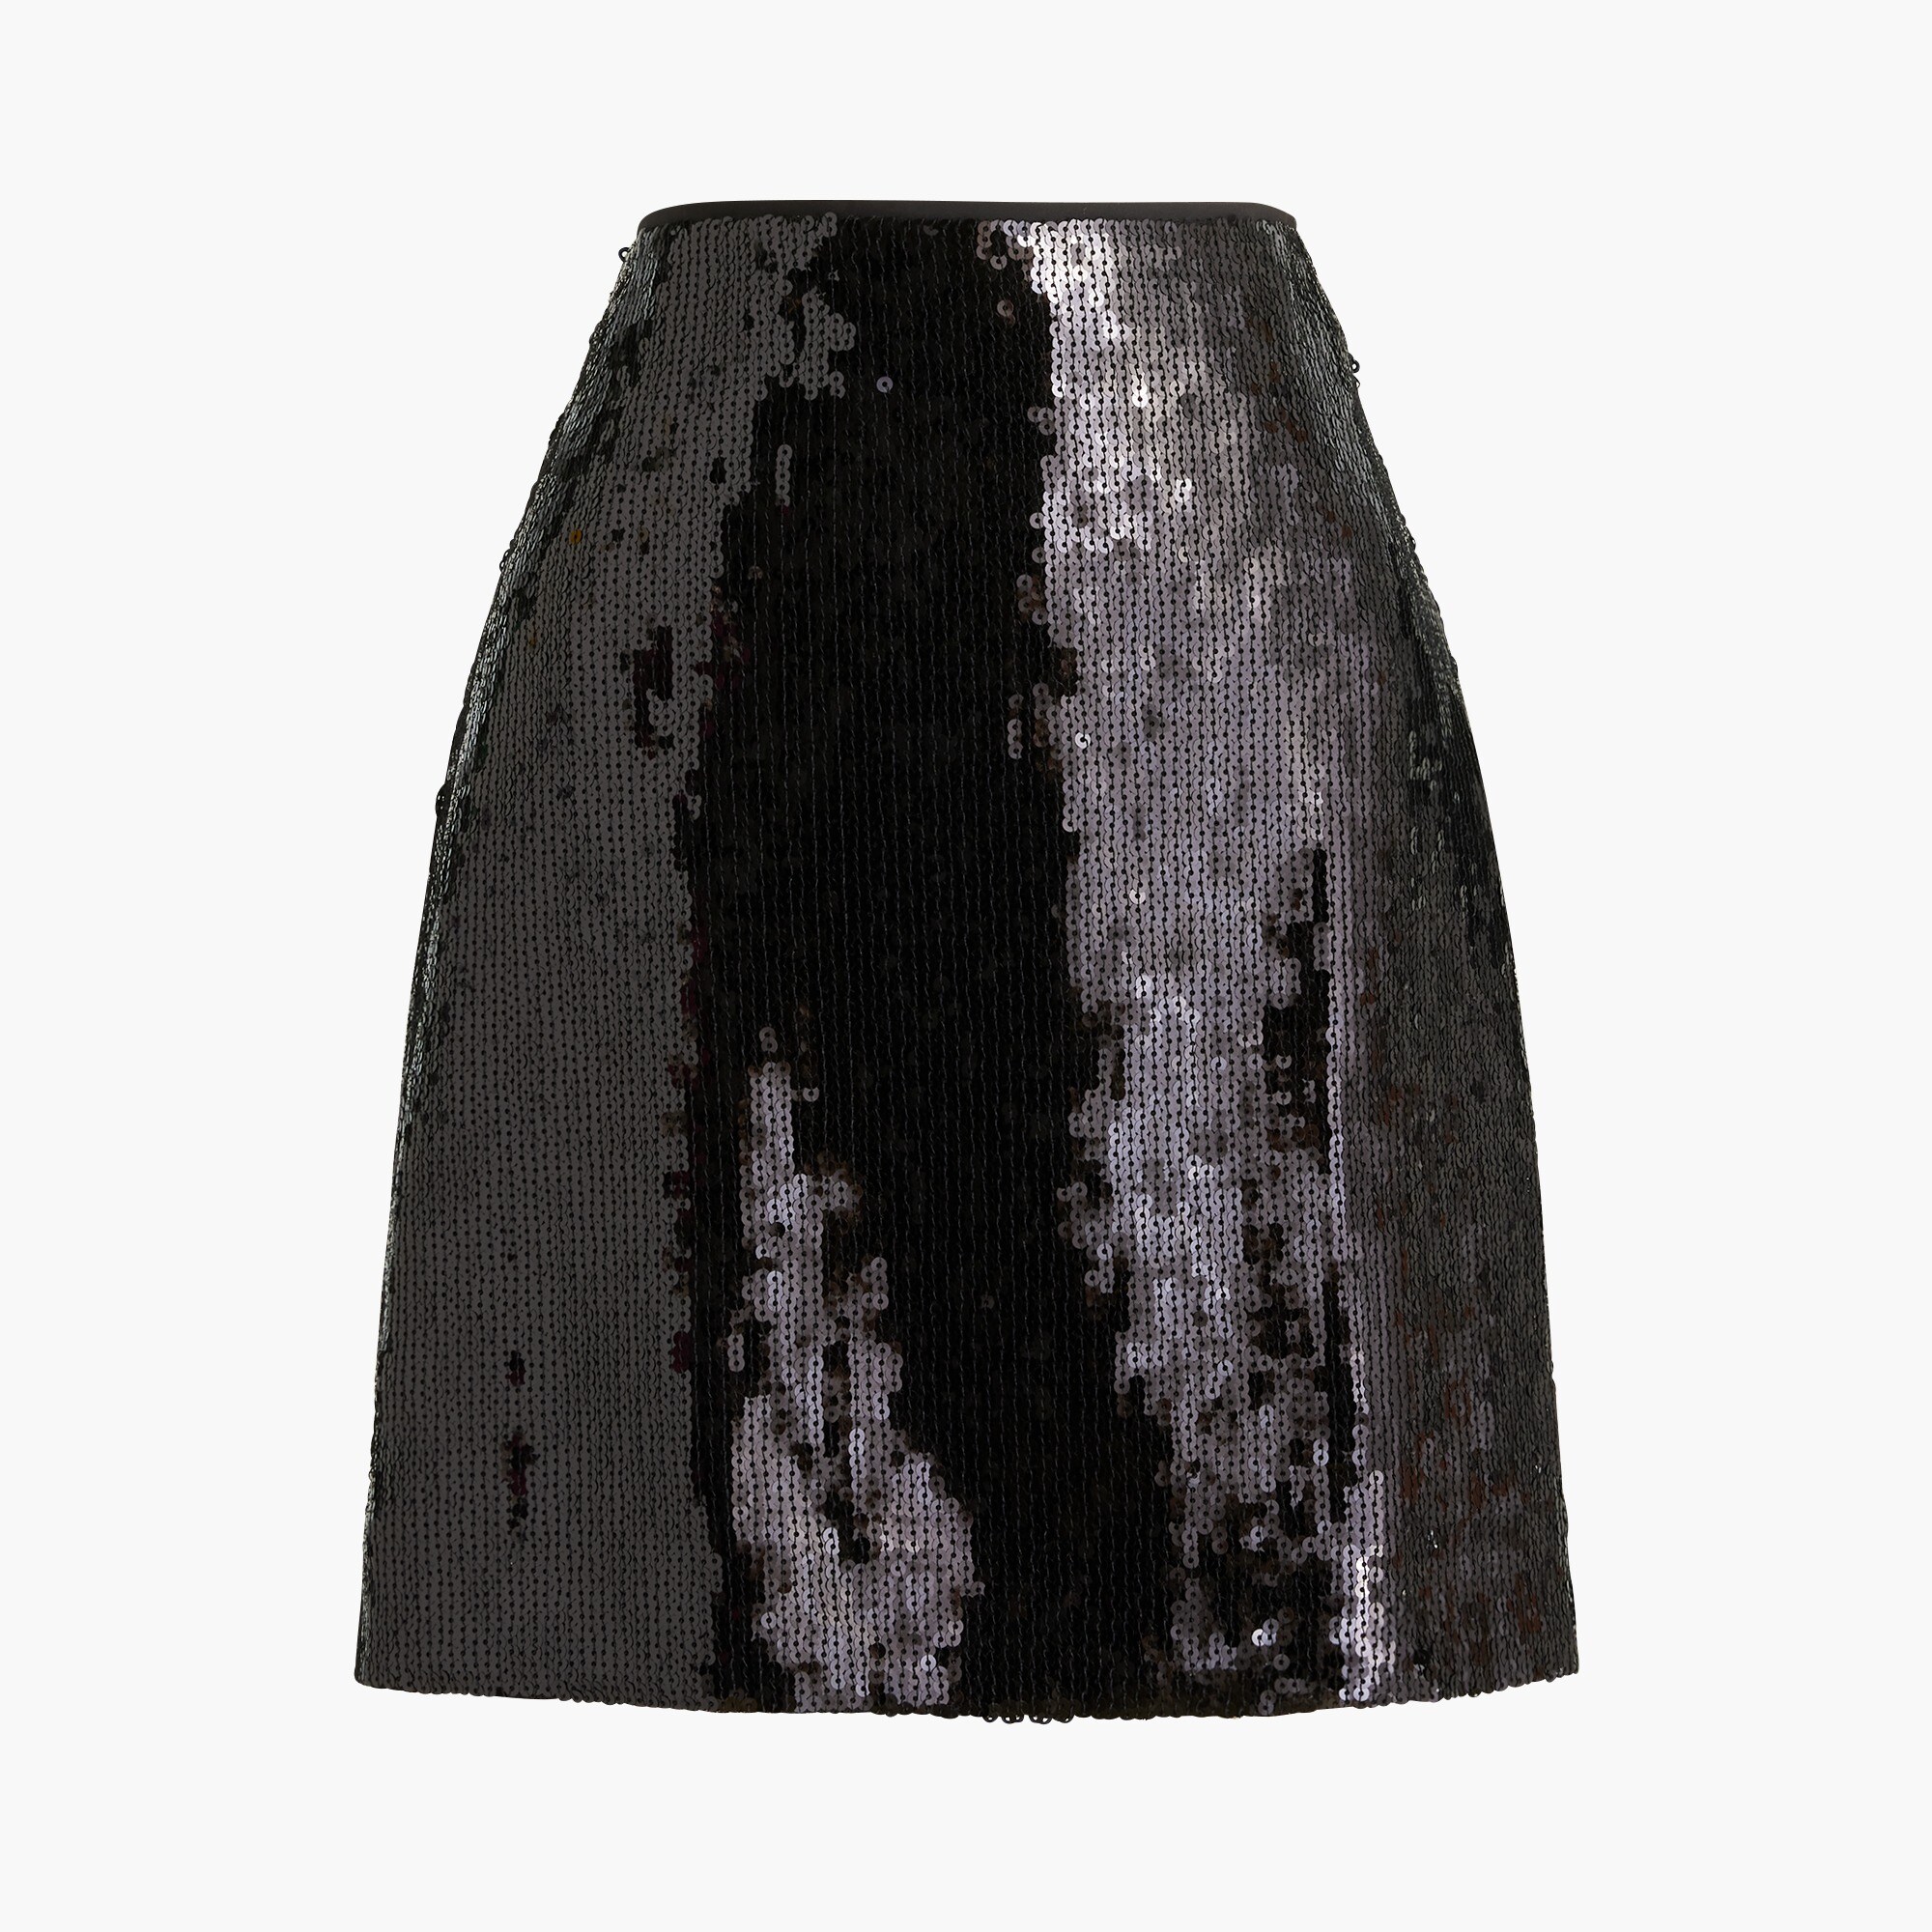  Sequin mini skirt